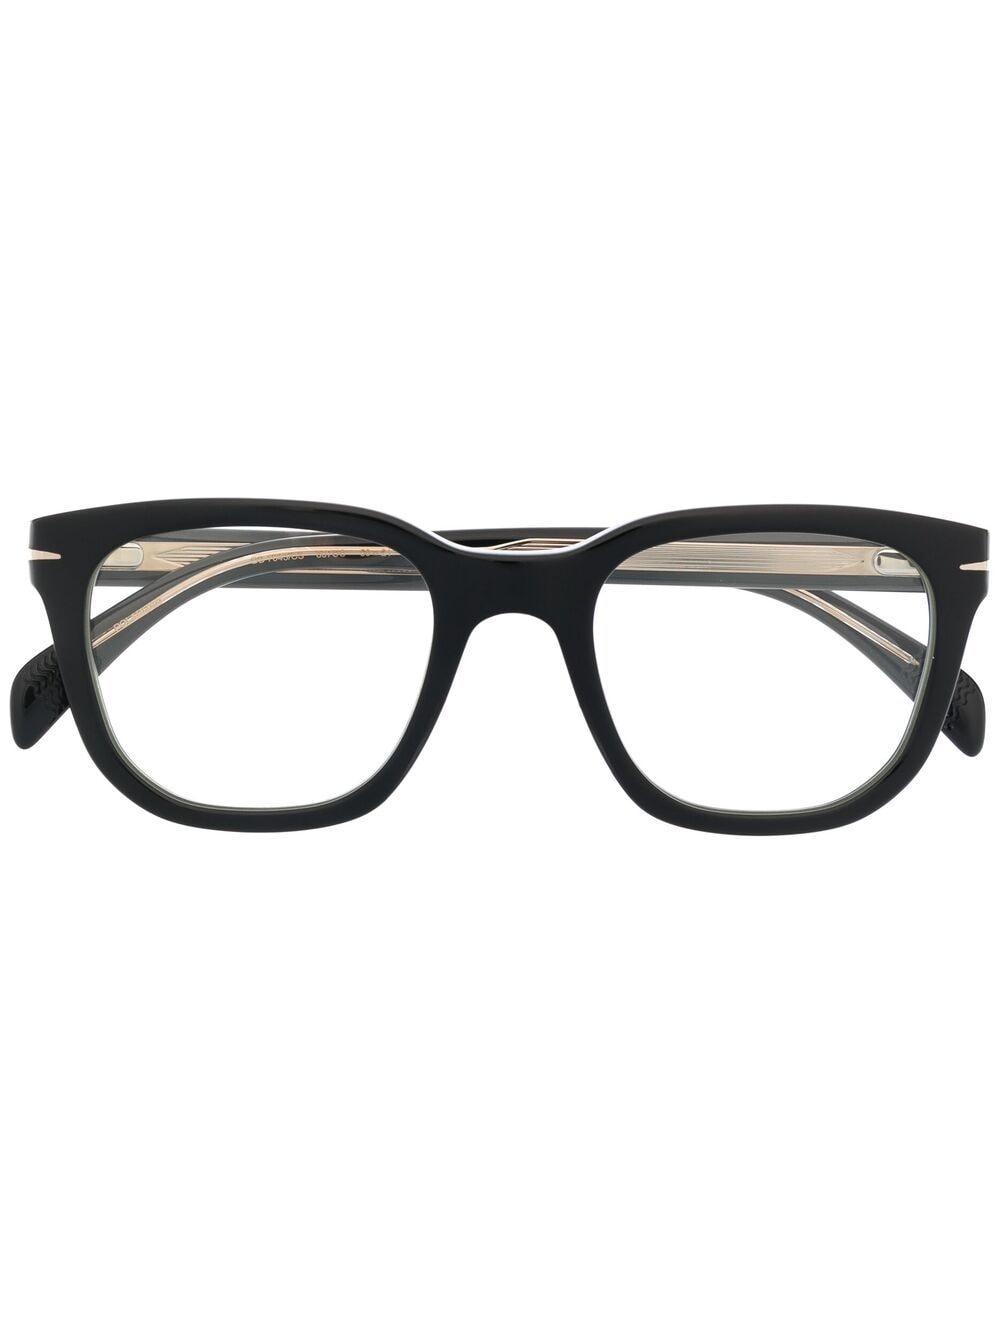 фото Eyewear by david beckham очки с накладными линзами